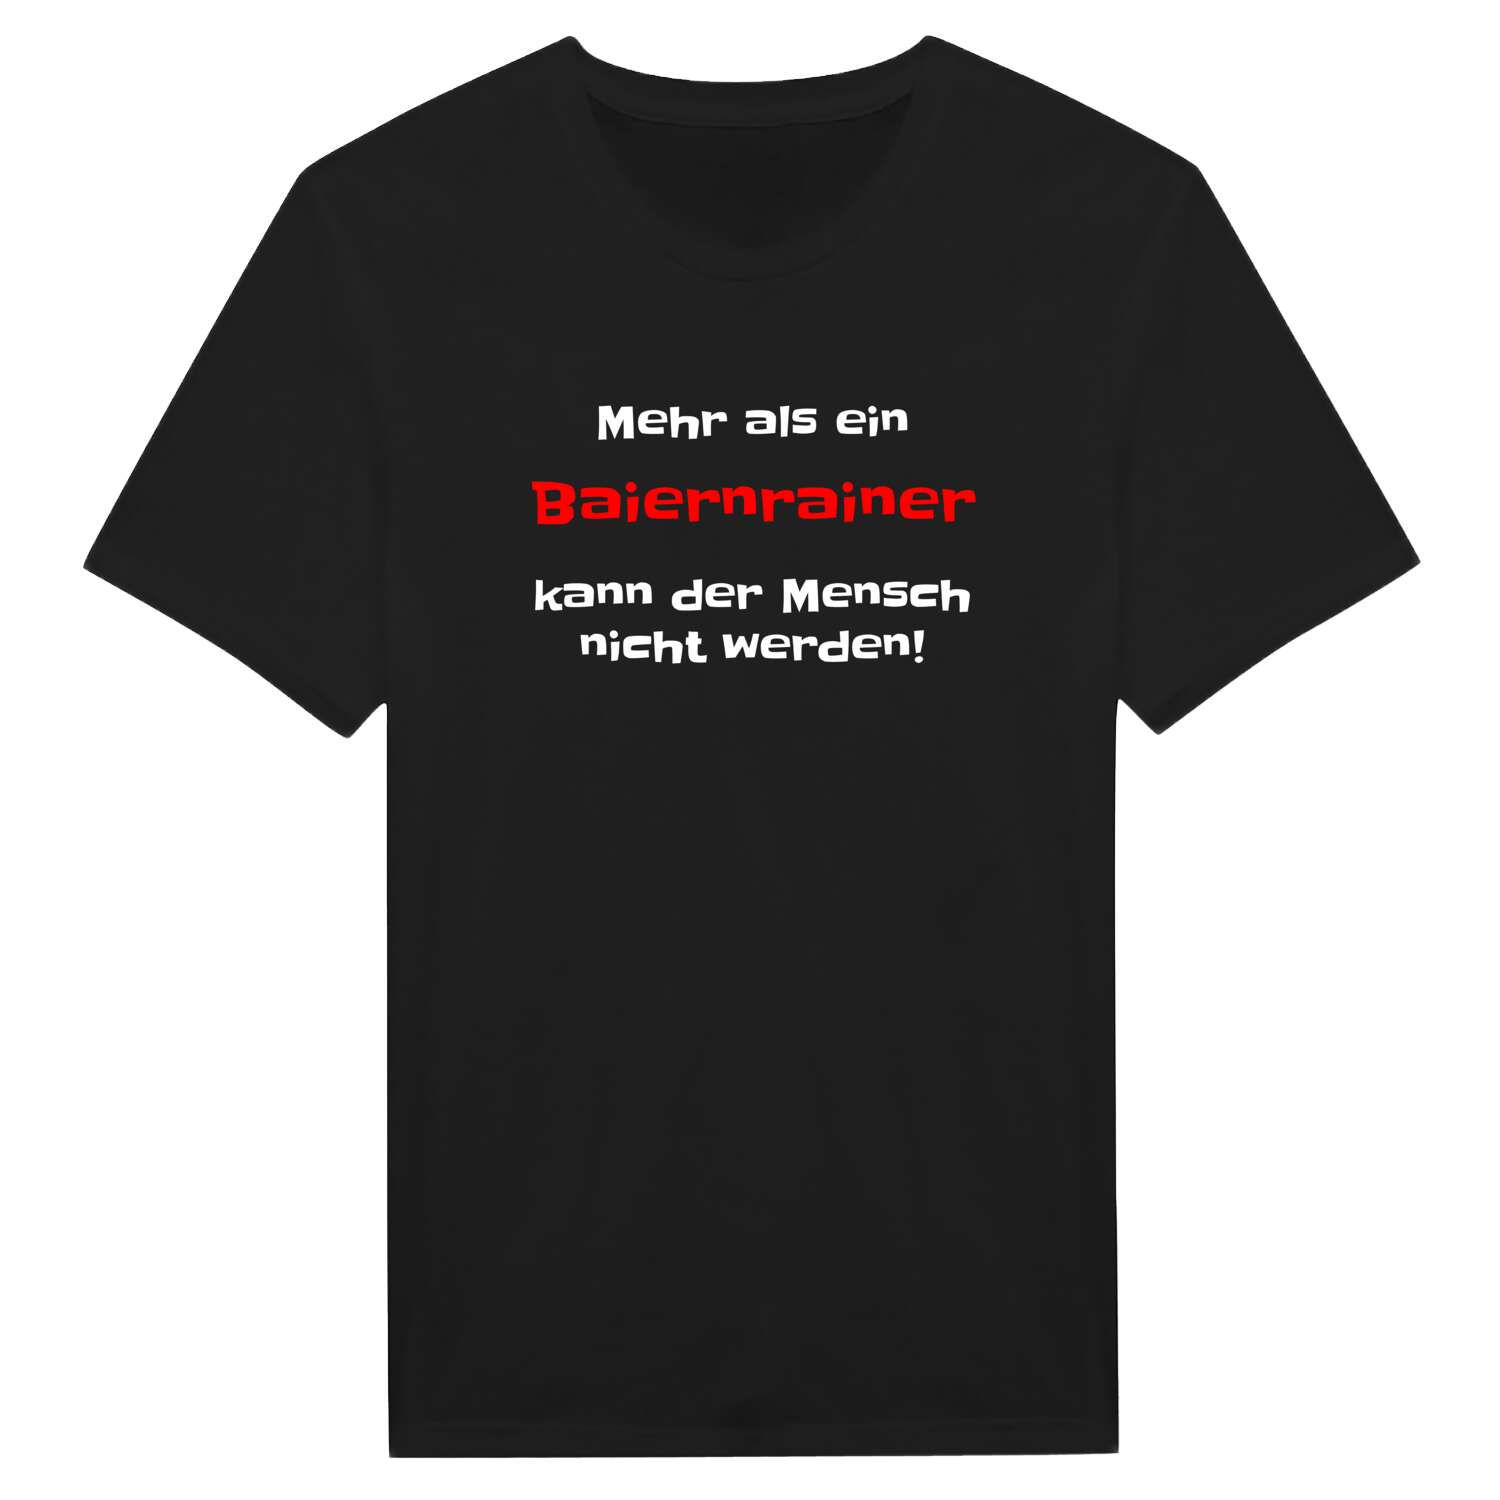 Baiernrain T-Shirt »Mehr als ein«